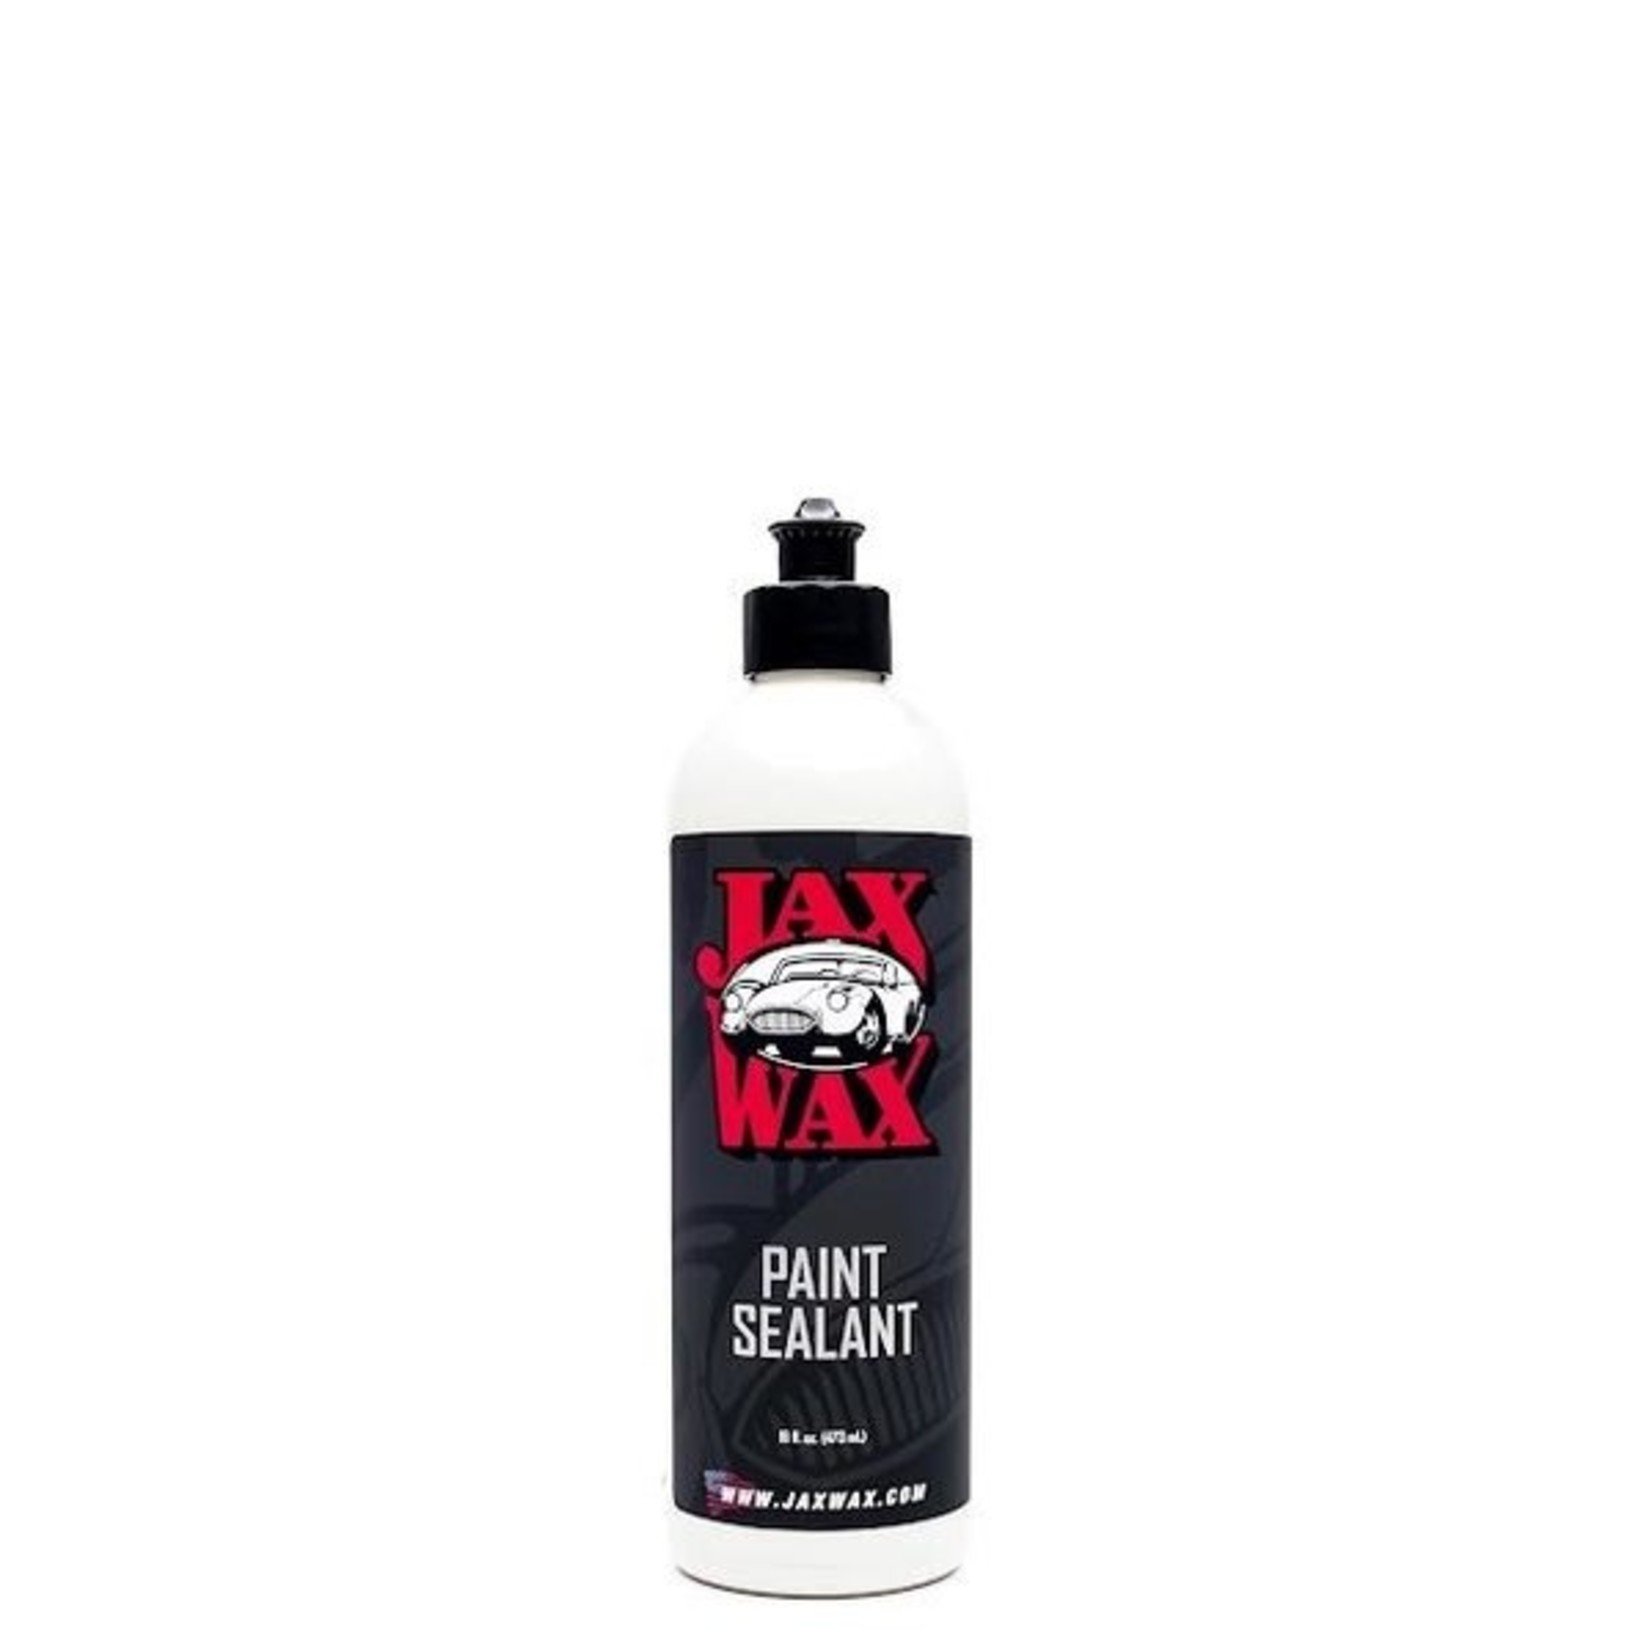 Jax Wax Paint Sealant 16oz